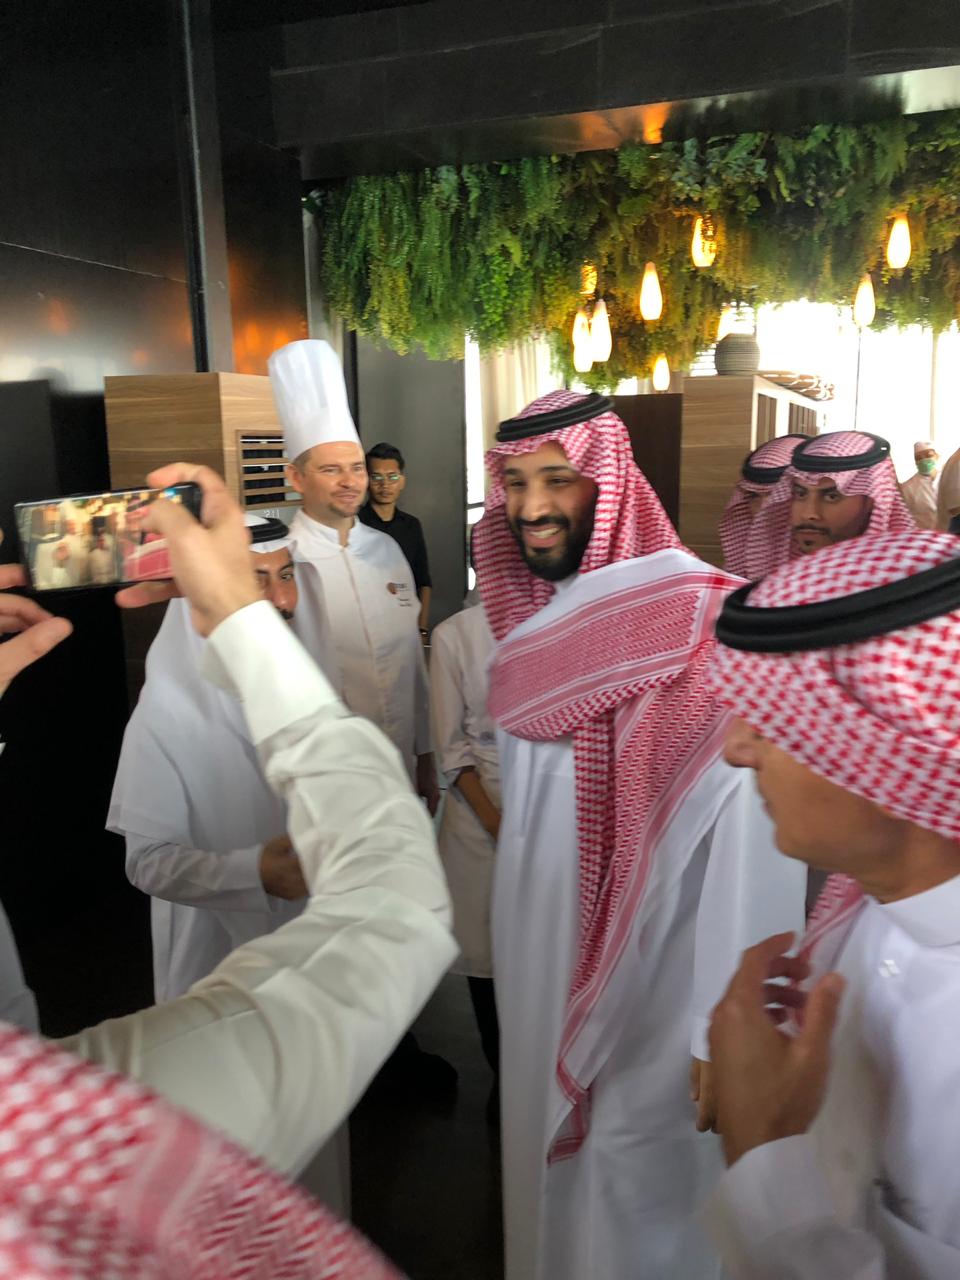 محمد بن سلمان في مطعم بجدة .. تواضع وابتسامة وصور تذكارية